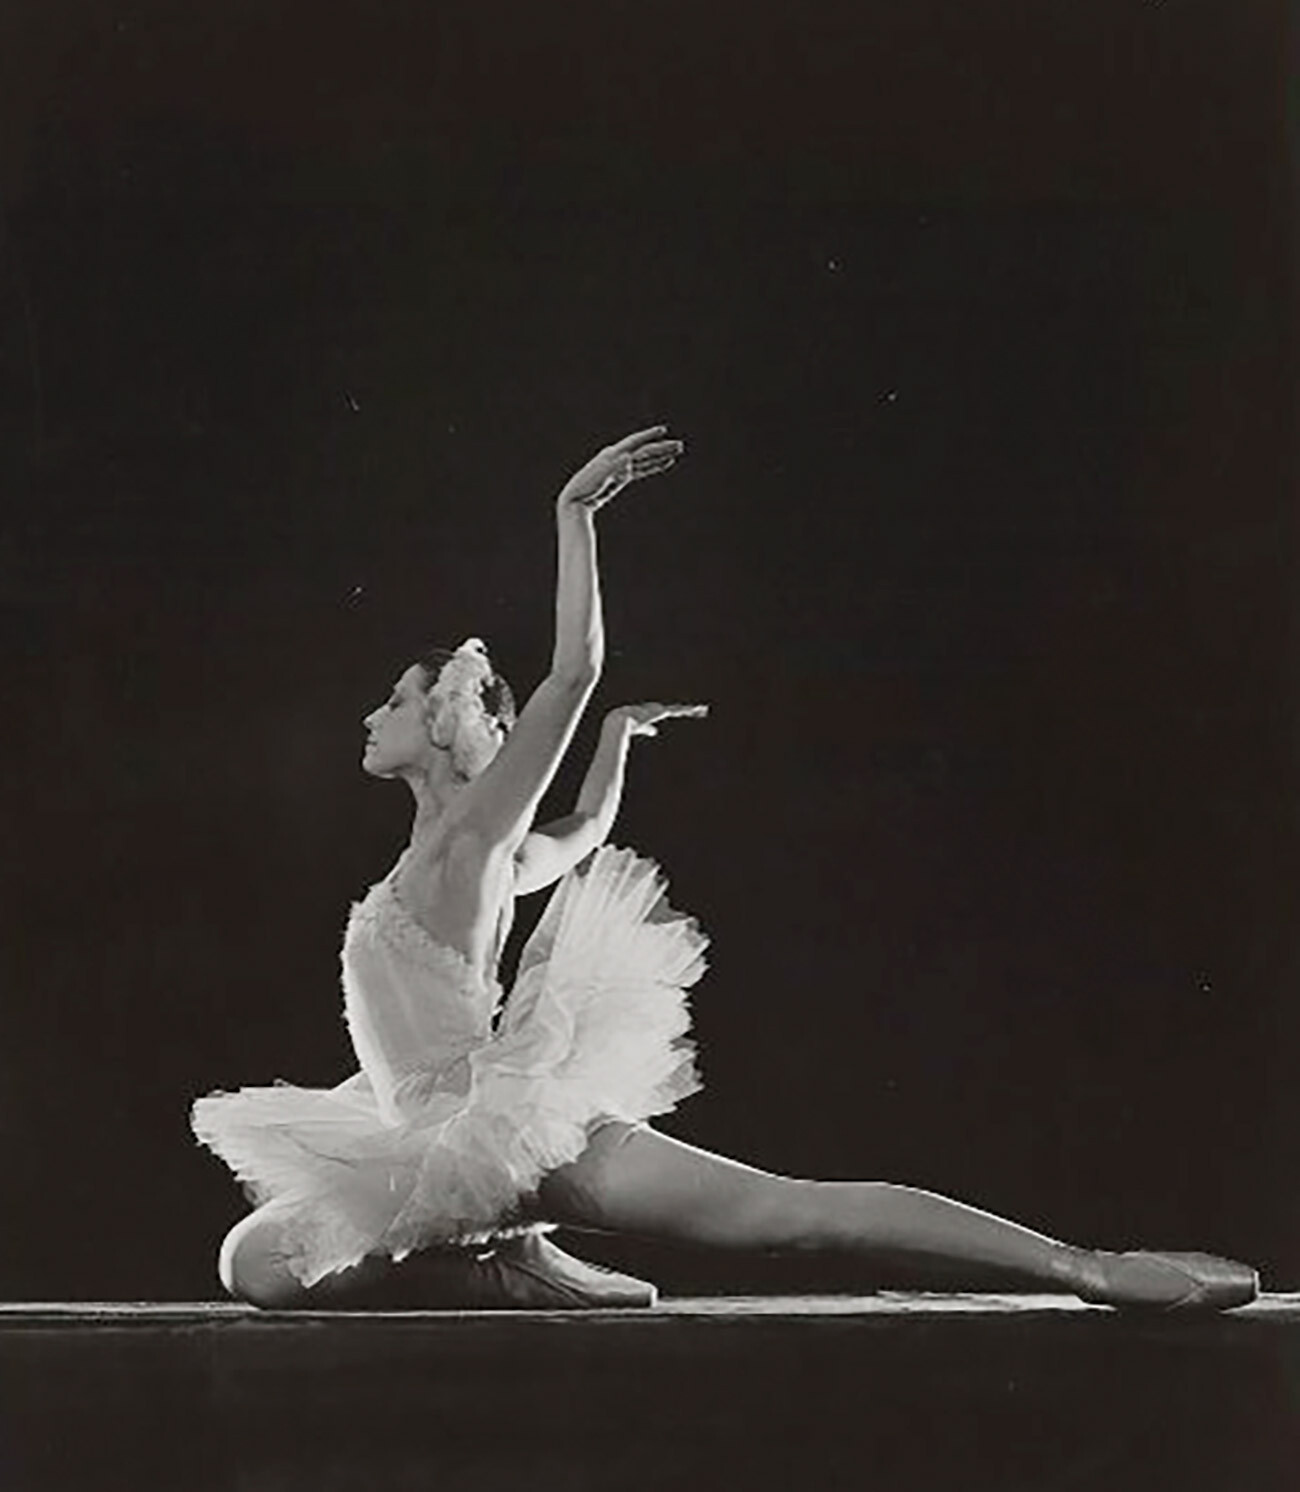 Майя Плисецкая в балете «Лебединое озеро», 1960-е

